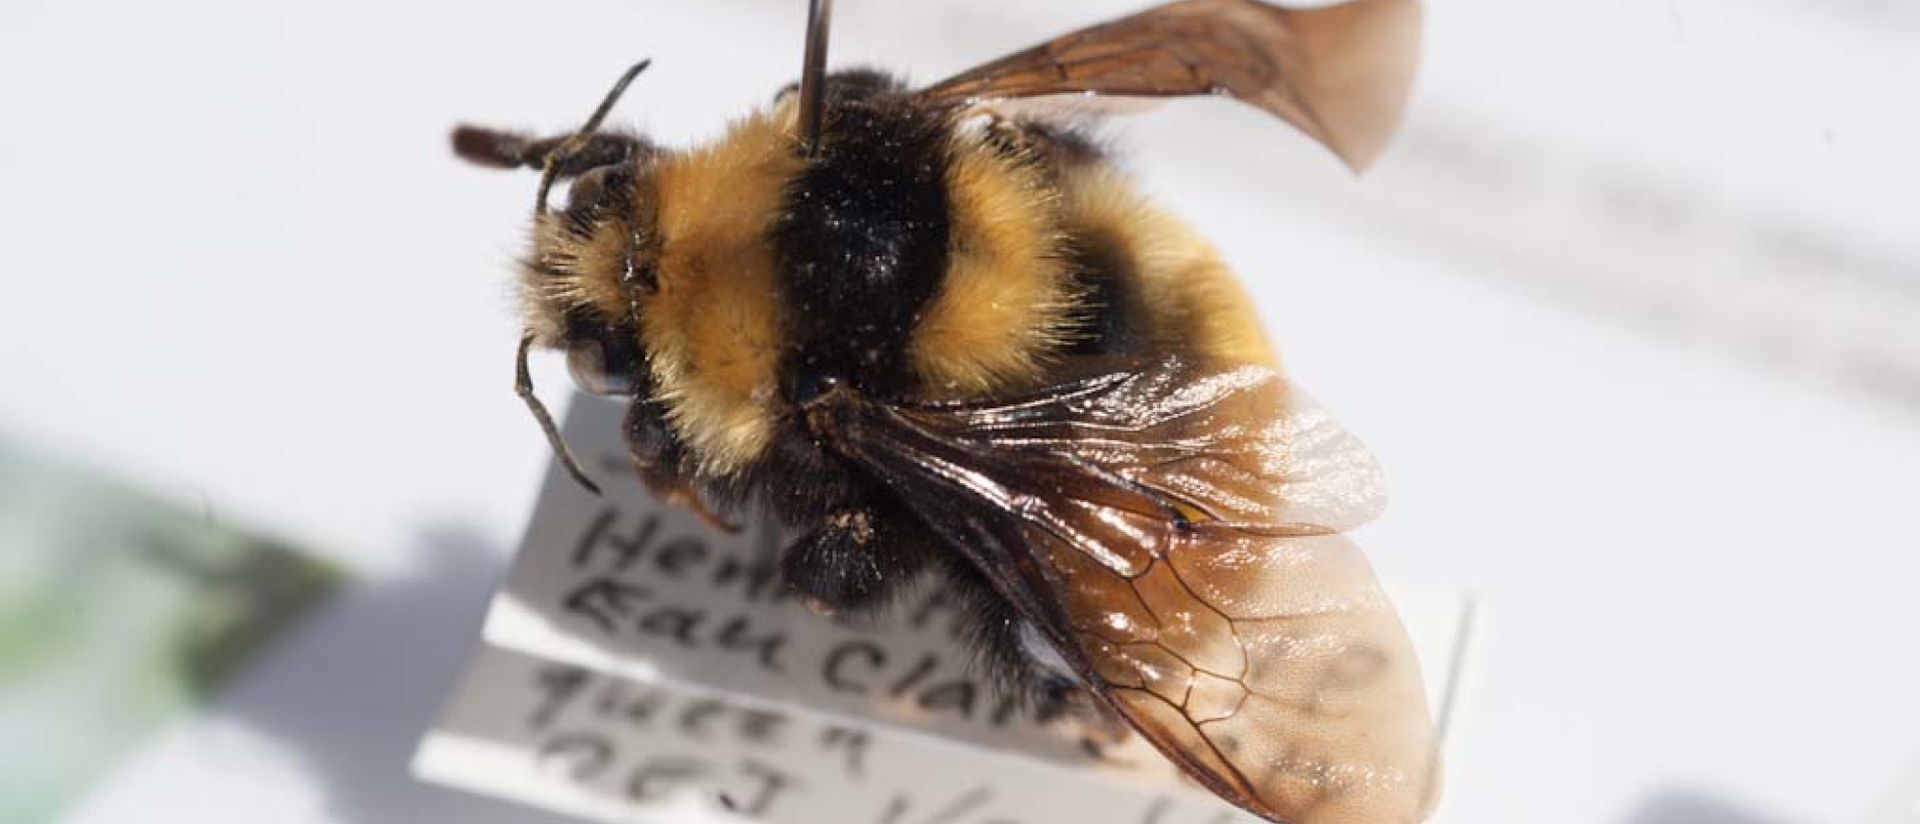 Honey bee study